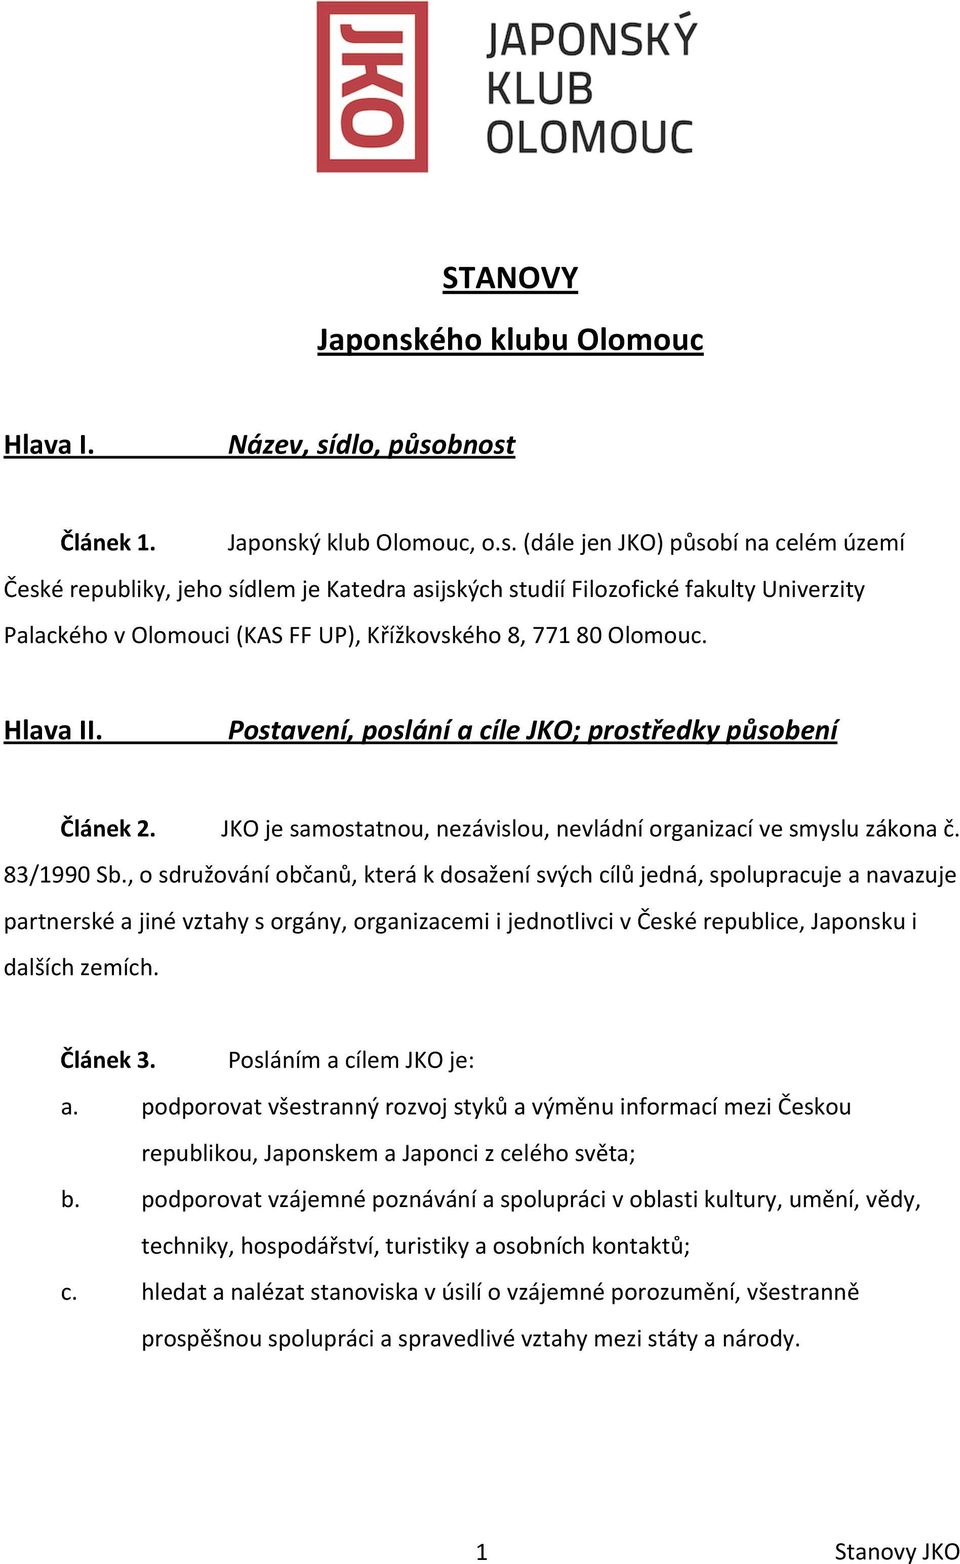 dlo, působnost Článek 1. Japonský klub Olomouc, o.s. (dále jen JKO) působí na celém území České republiky, jeho sídlem je Katedra asijských studií Filozofické fakulty Univerzity Palackého v Olomouci (KAS FF UP), Křížkovského 8, 771 80 Olomouc.